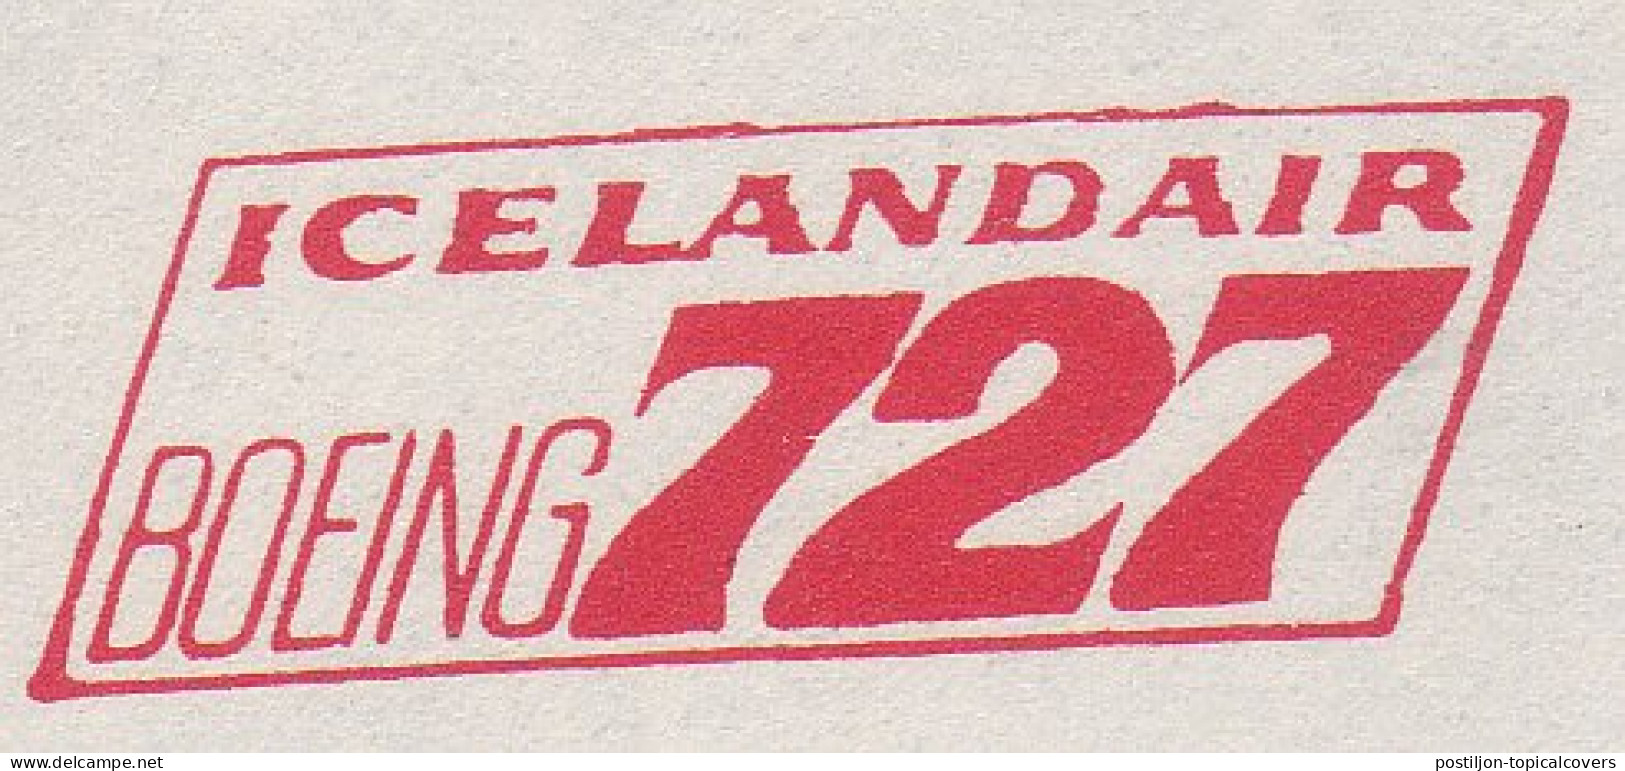 Proof / Specimen Meter Cut Iceland 1970 IcelandAir - Boeing 727 - Flugzeuge